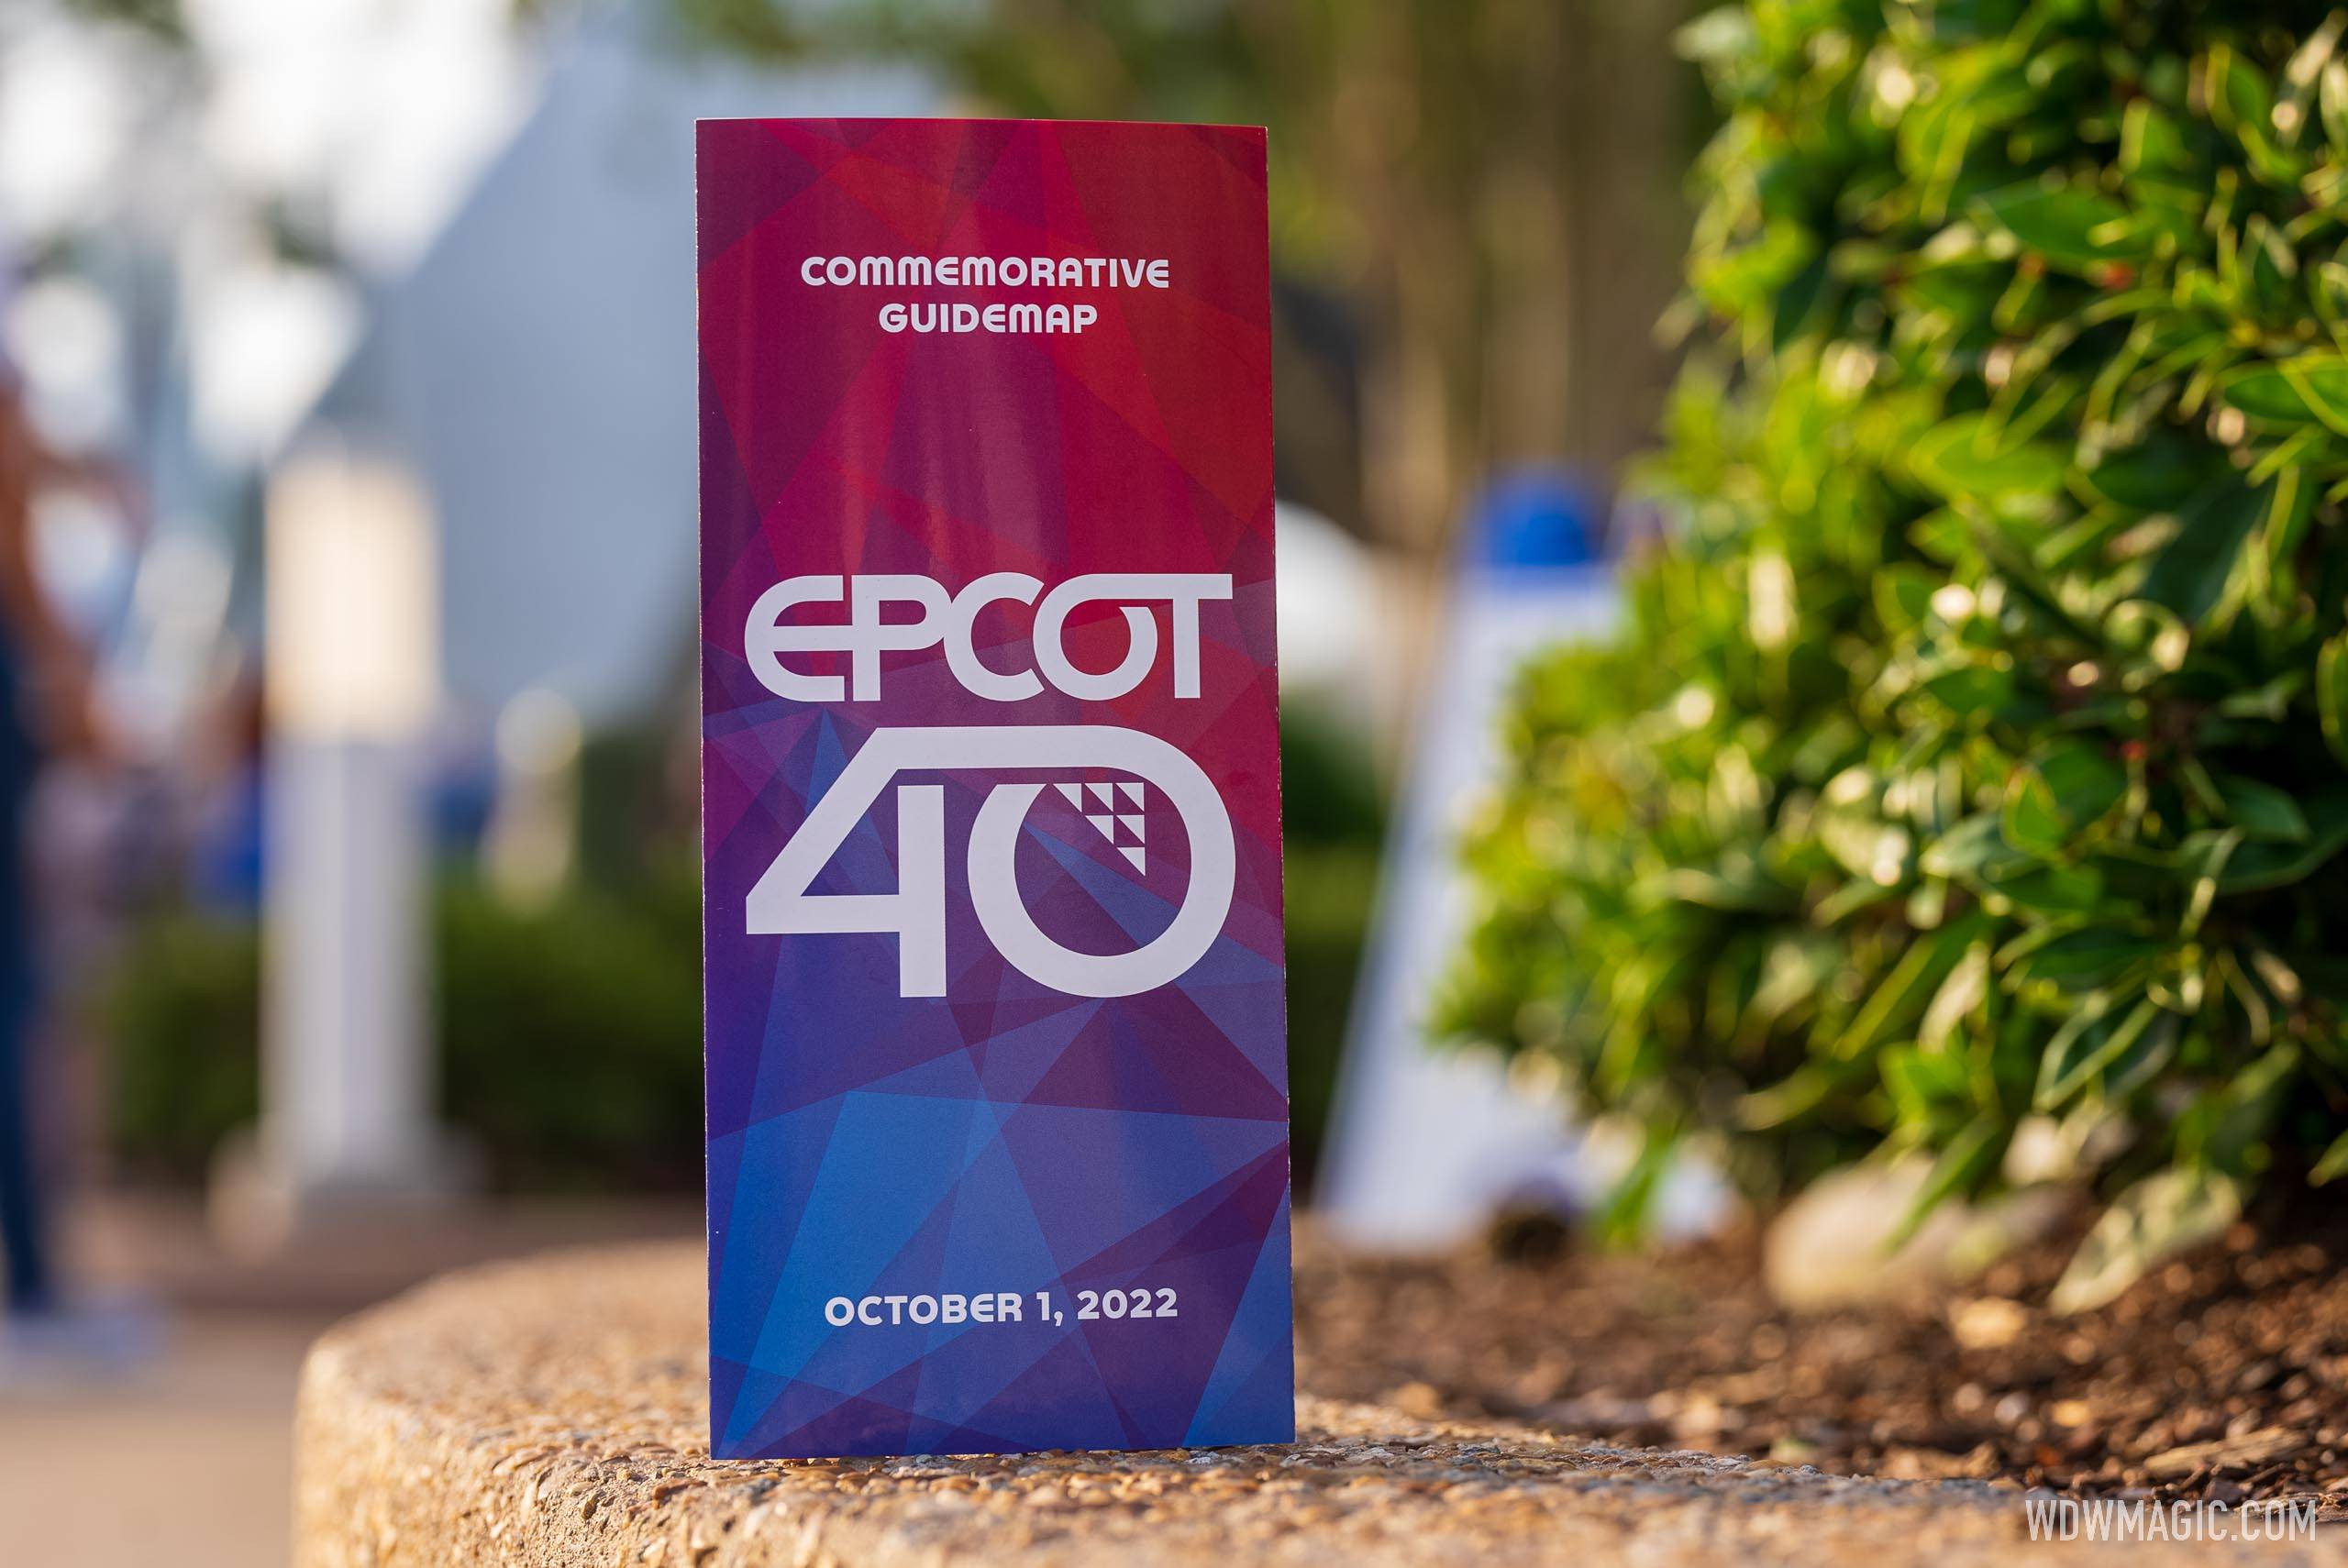 EPCOT 40th Anniversary